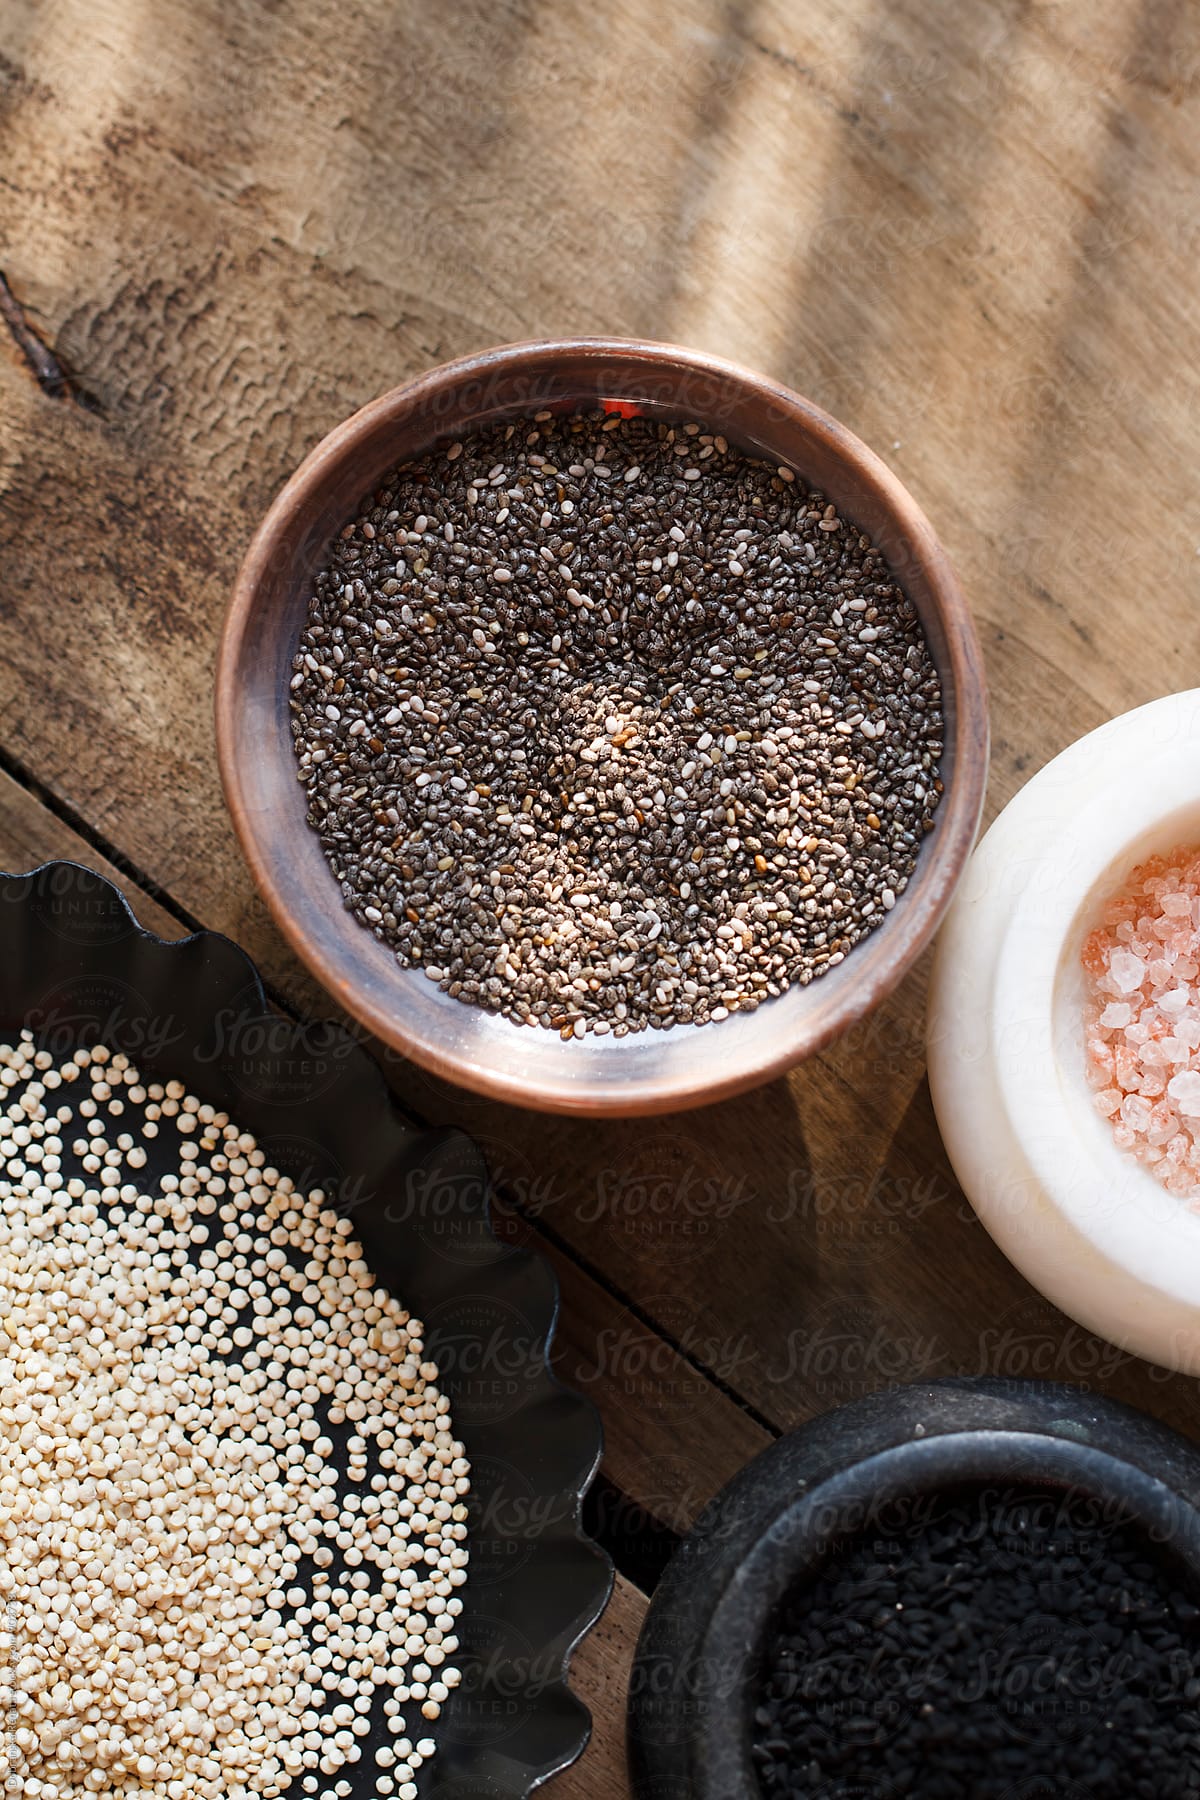 Quinoa,chia seeds,himalayan salt, black cumin